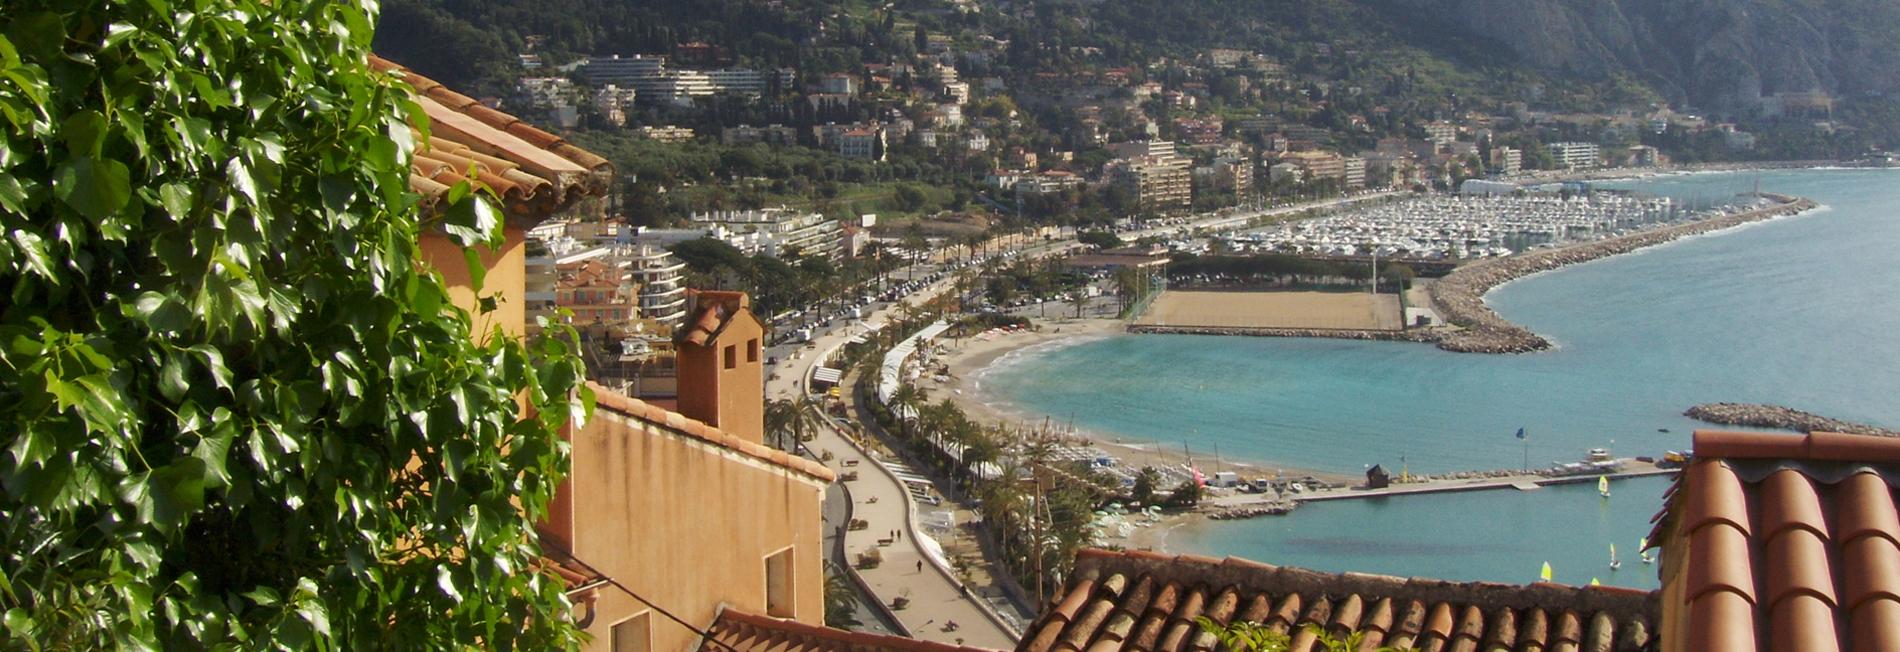 Côte d'Azur, Menton